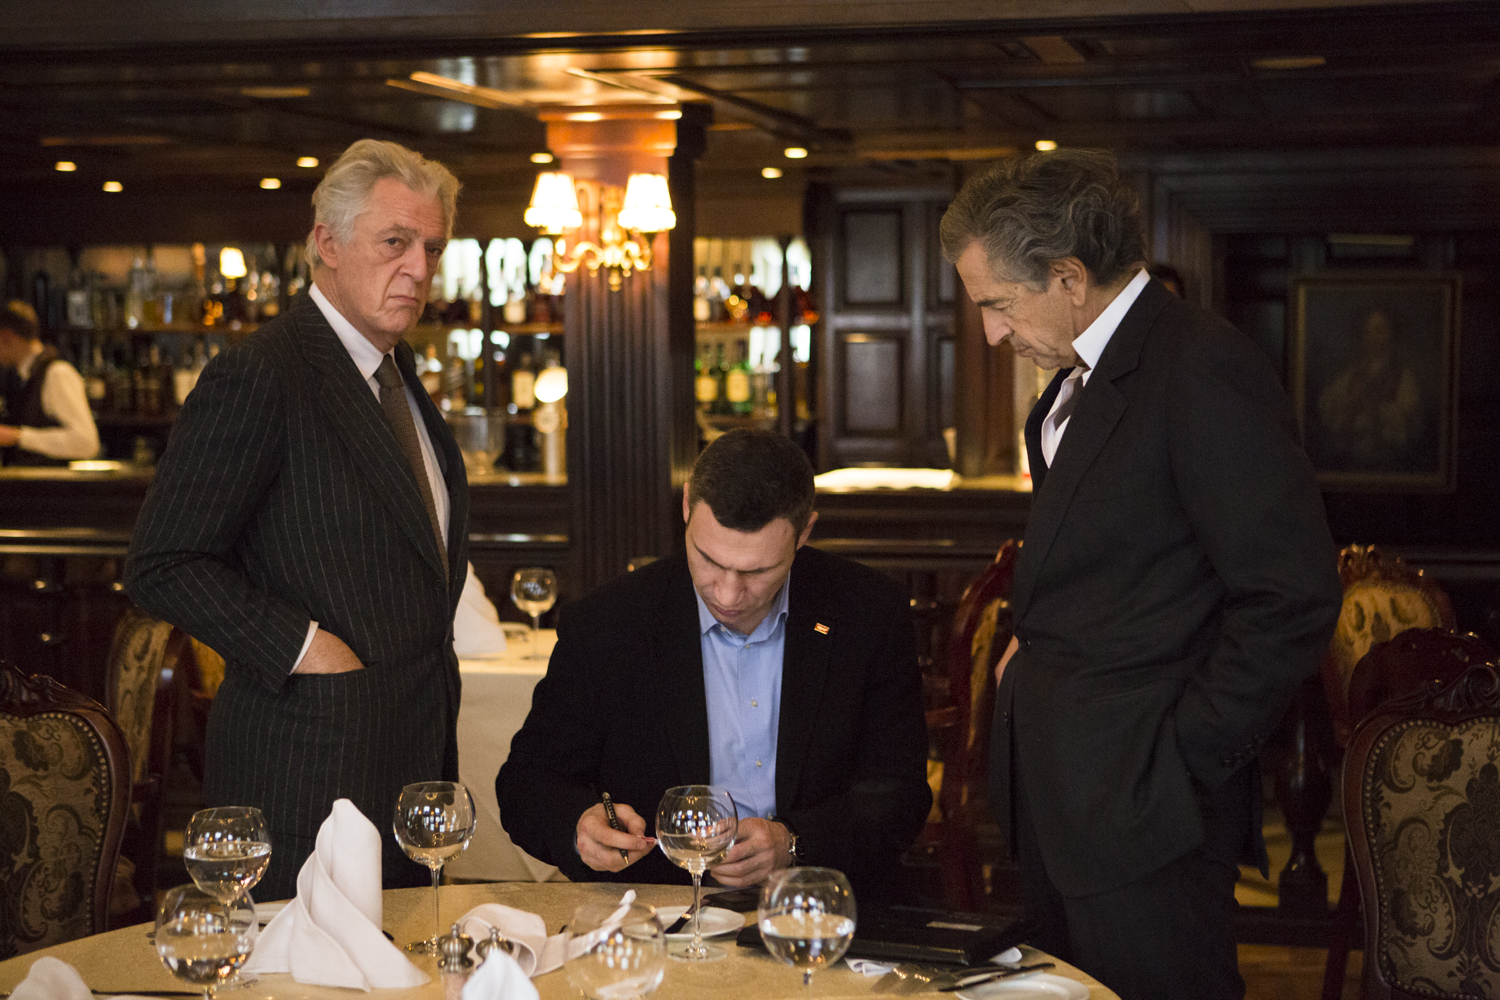 Rencontre entre Vitali Klitschko (au centre), Bernard-Henri Levy (à droite) et Gilles Hertzog (à gauche), à Kiev le 3 mars 2014, dans un restaurant. Klitschko signe ou écrit sur un document, sous le regard de Lévy et Hertzog.